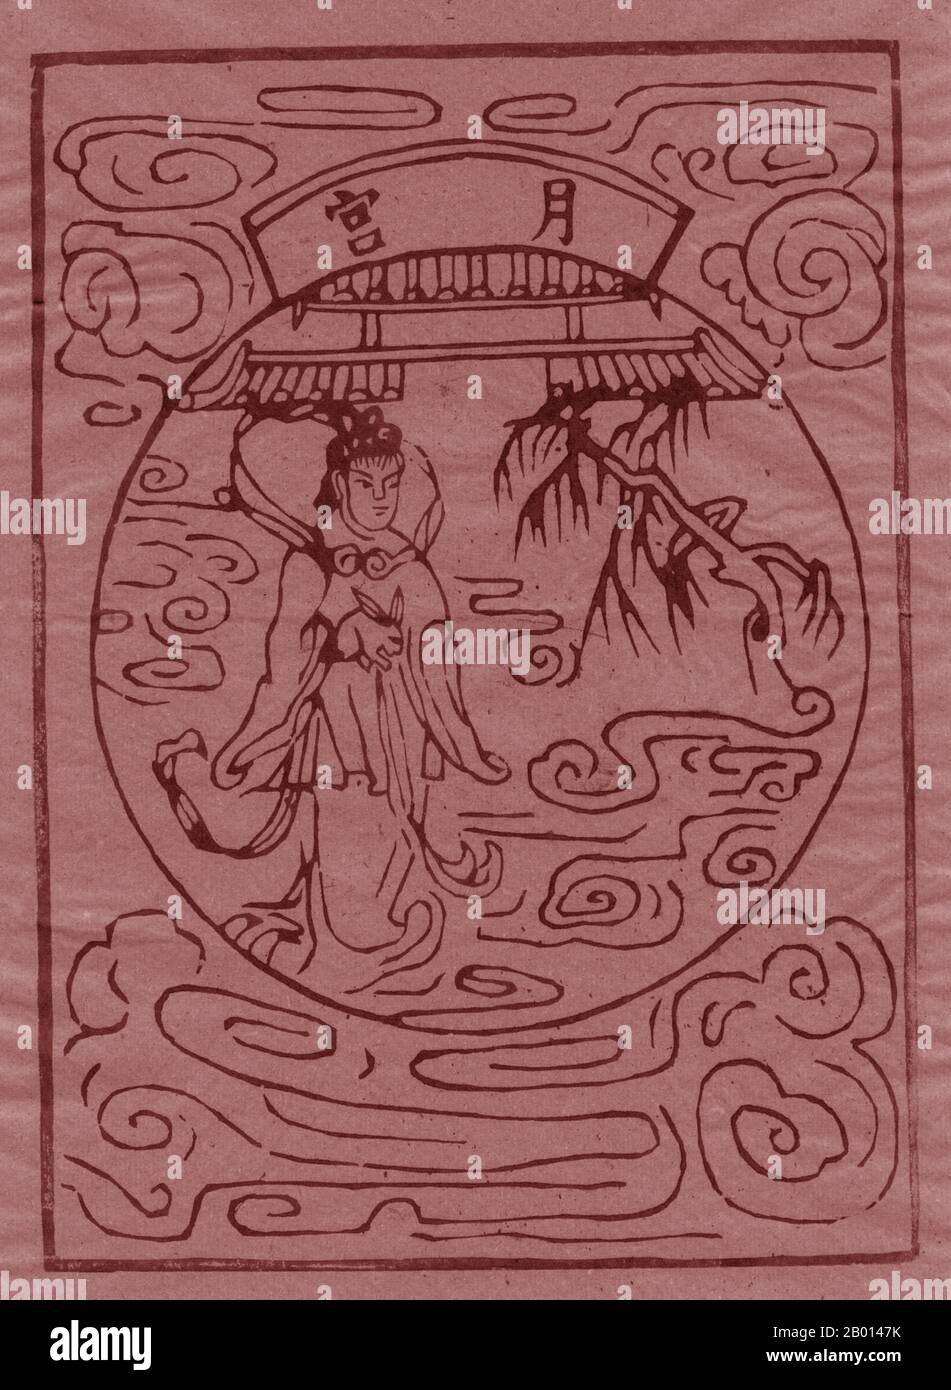 China: Die daoistische Gottheit Chang-e Stahl das Elixier der Unsterblichkeit. Holzschnitt, 20. Jahrhundert. Chang'e, Ch'ang-O, Chang-NGO oder Sheung NGO, ursprünglich bekannt als Heng'e oder Heng-O, ist die chinesische Göttin des Mondes. Im Gegensatz zu vielen Mondgottheiten in anderen Kulturen, die den Mond personifizieren, lebt Chang'e nur auf dem Mond. Chang'e ist Gegenstand mehrerer Legenden in der chinesischen Mythologie, von denen die meisten einige der folgenden Elemente enthalten: Ihr Ehemann Houyi, der Bogenschütze, ein gütiger oder böswilliger Kaiser, ein Lebenselixier und tatsächlich der Mond. Stockfoto